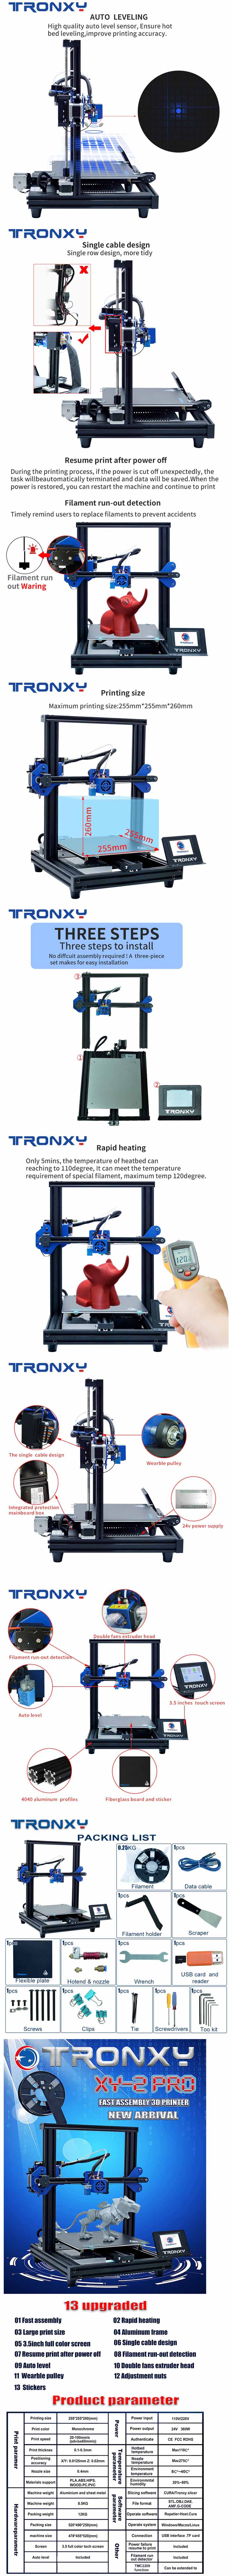 Tronxy XY-2 Pro 3D Printer